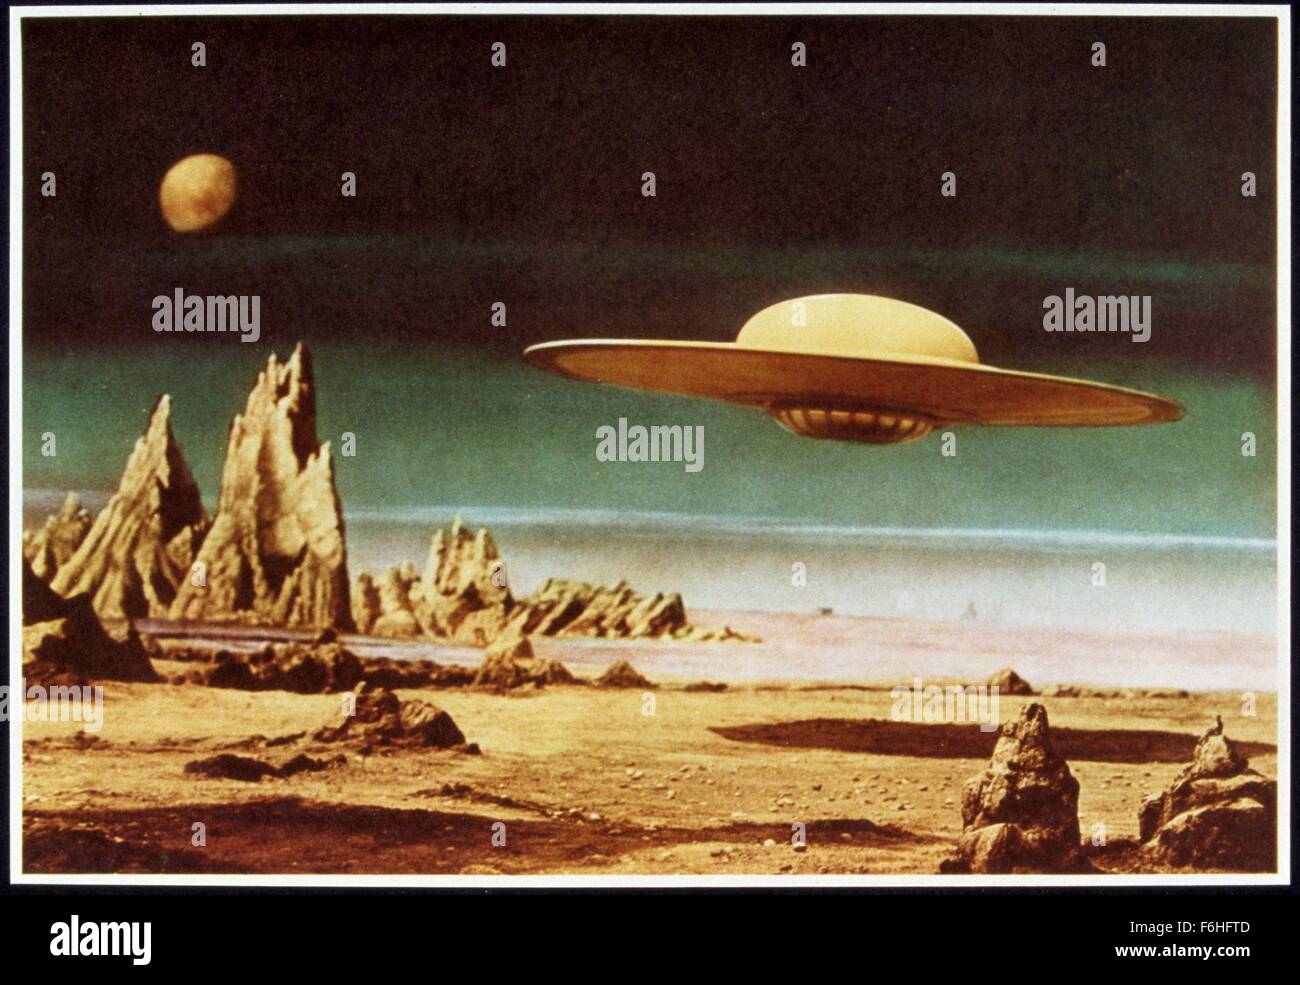 1956, Filmtitel: FORBIDDEN PLANET, Regie: FRED McLEOD WILCOX, Studio: MGM, abgebildet: Roboter, Androiden, CYBORGS-Klone, Sci-Fi, Weltraumforschung, TEMPEST, SPACE, fliegende Untertasse, UFO, Wüste, Planeten, Mond, fliegen. (Bild Kredit: SNAP) Stockfoto